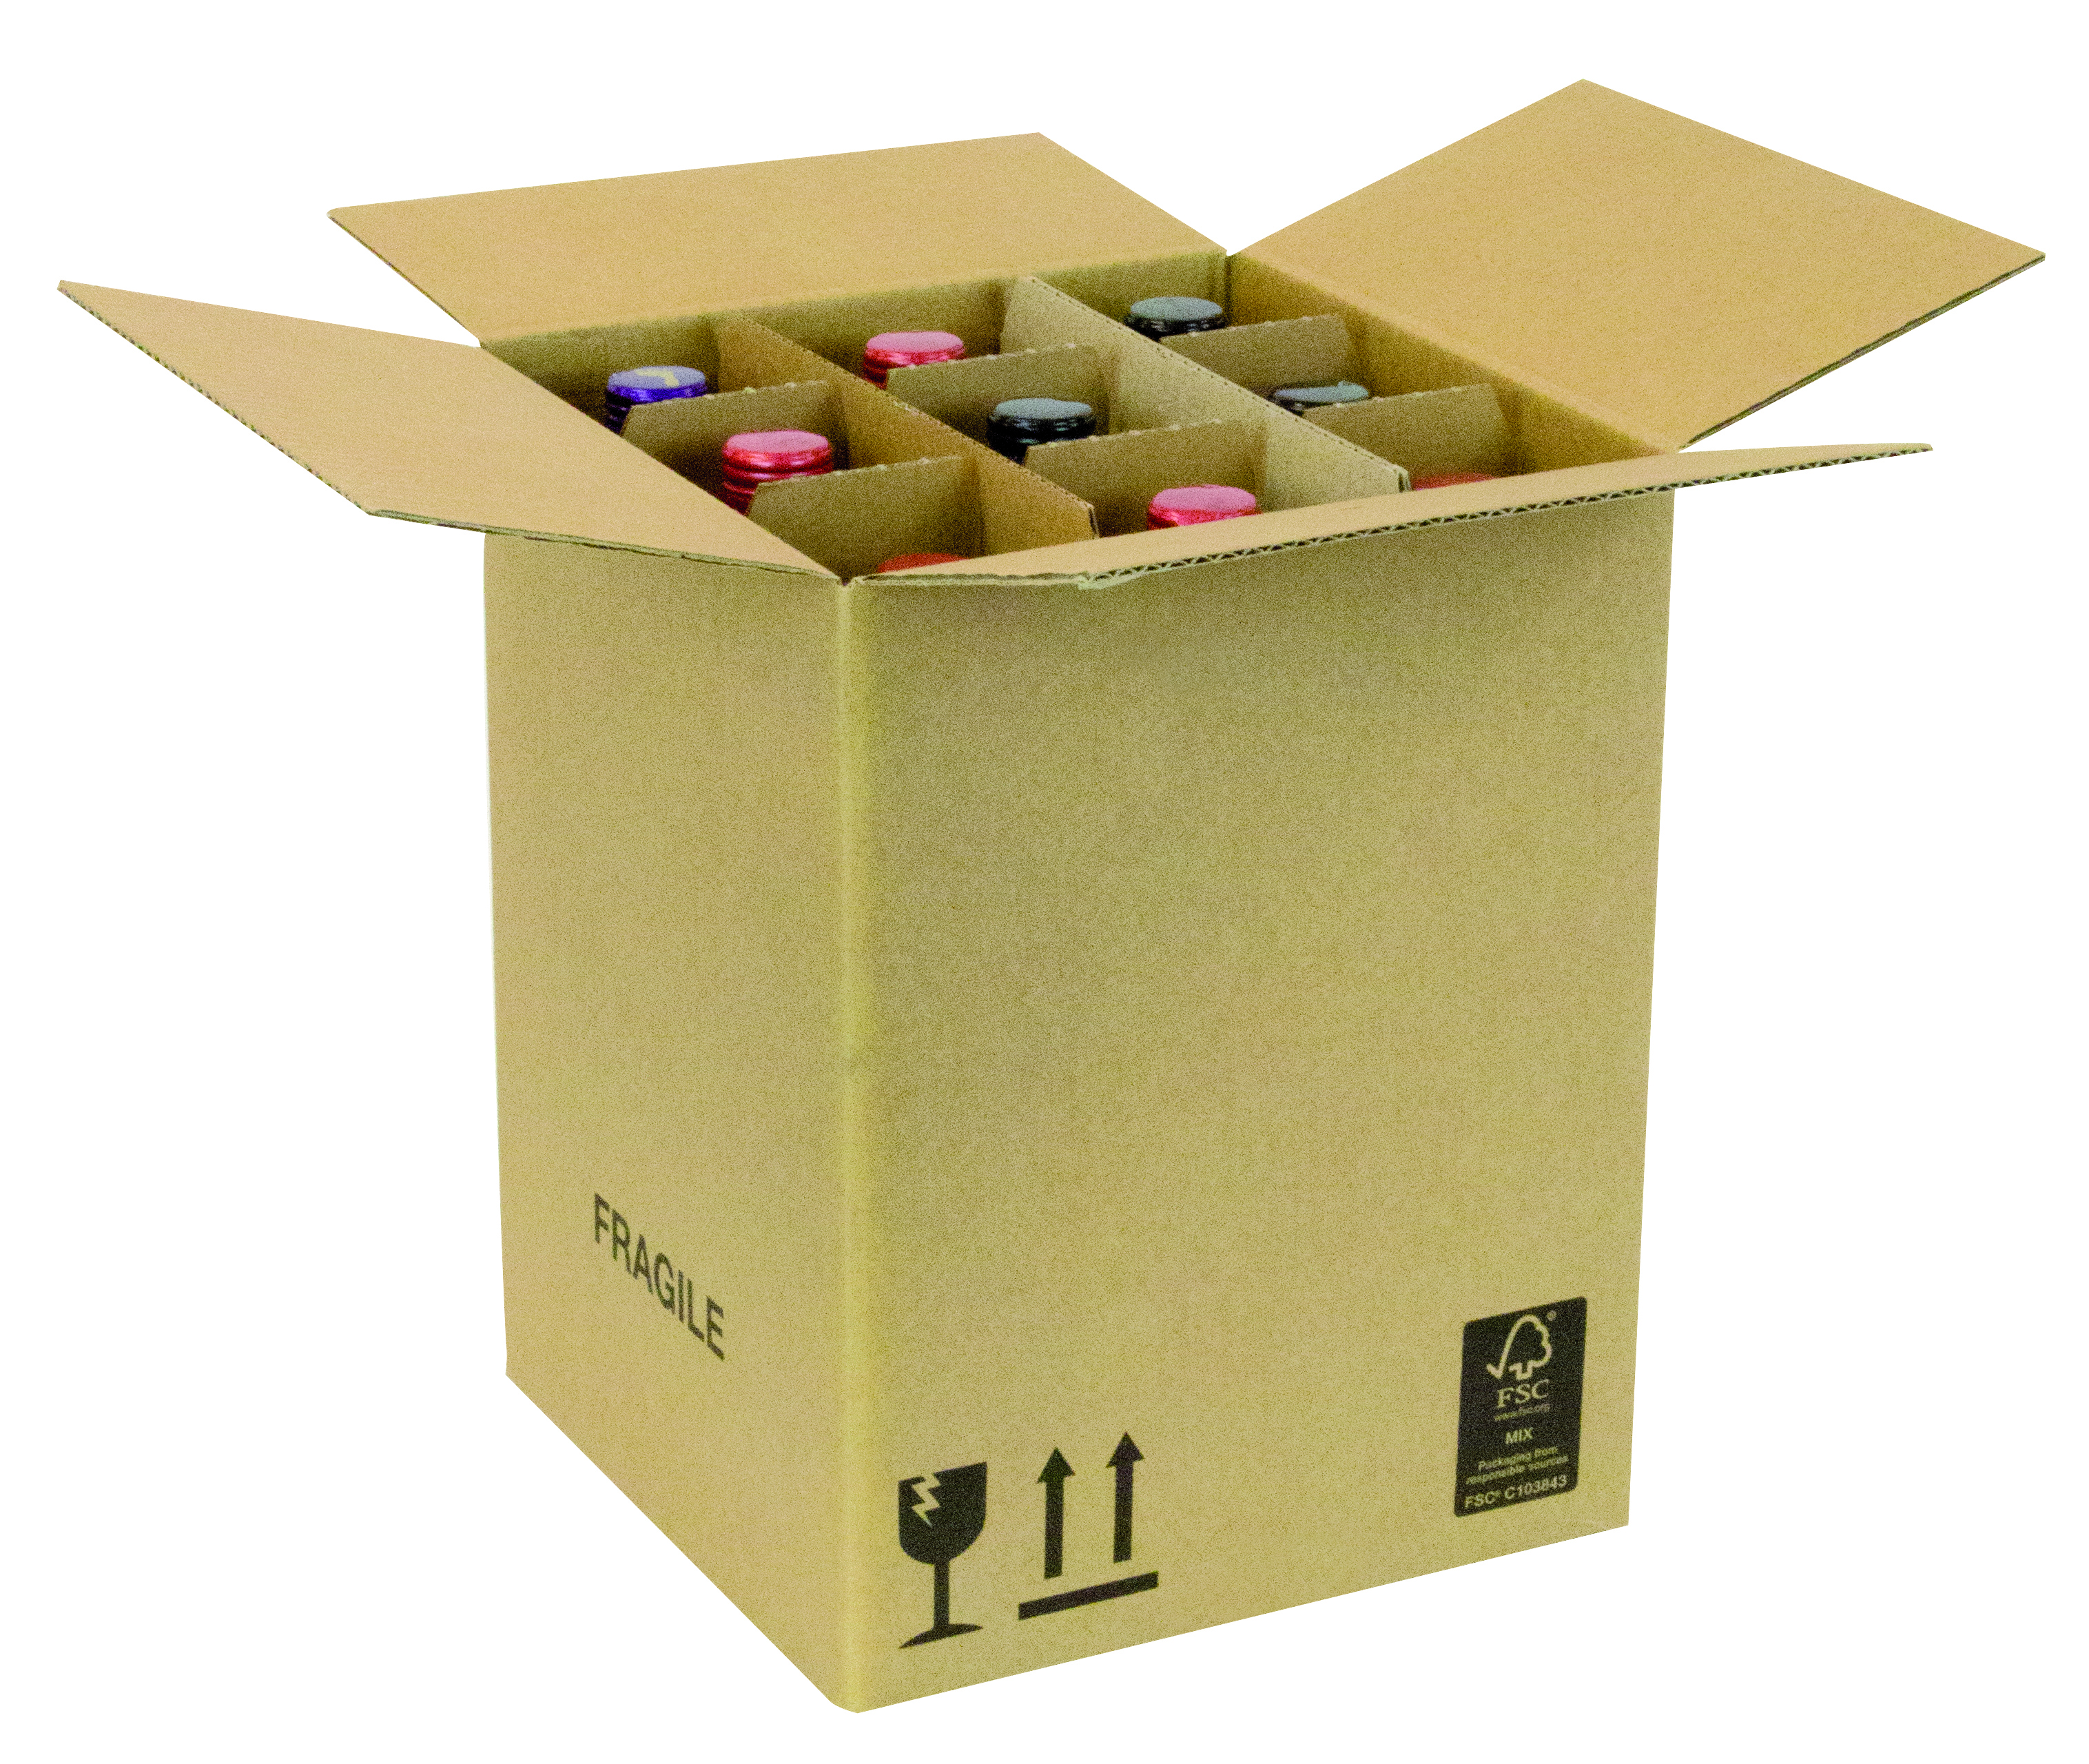 Flaschenkarton fur 9 Flaschen 235x235x305mm